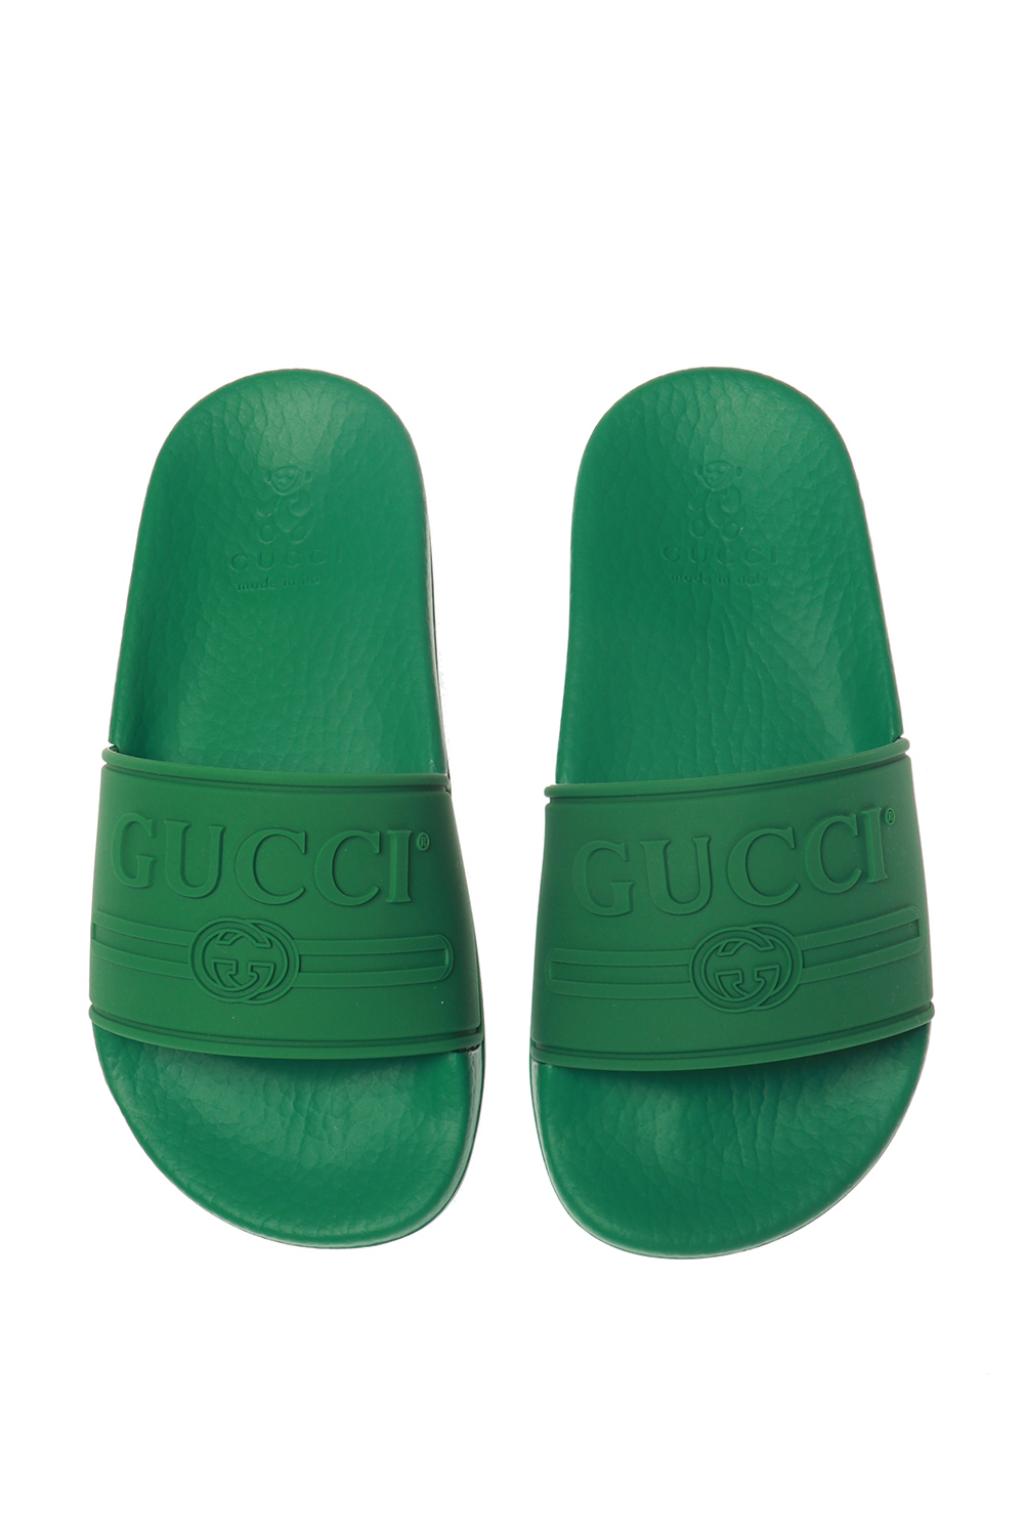 gucci boys flip flops